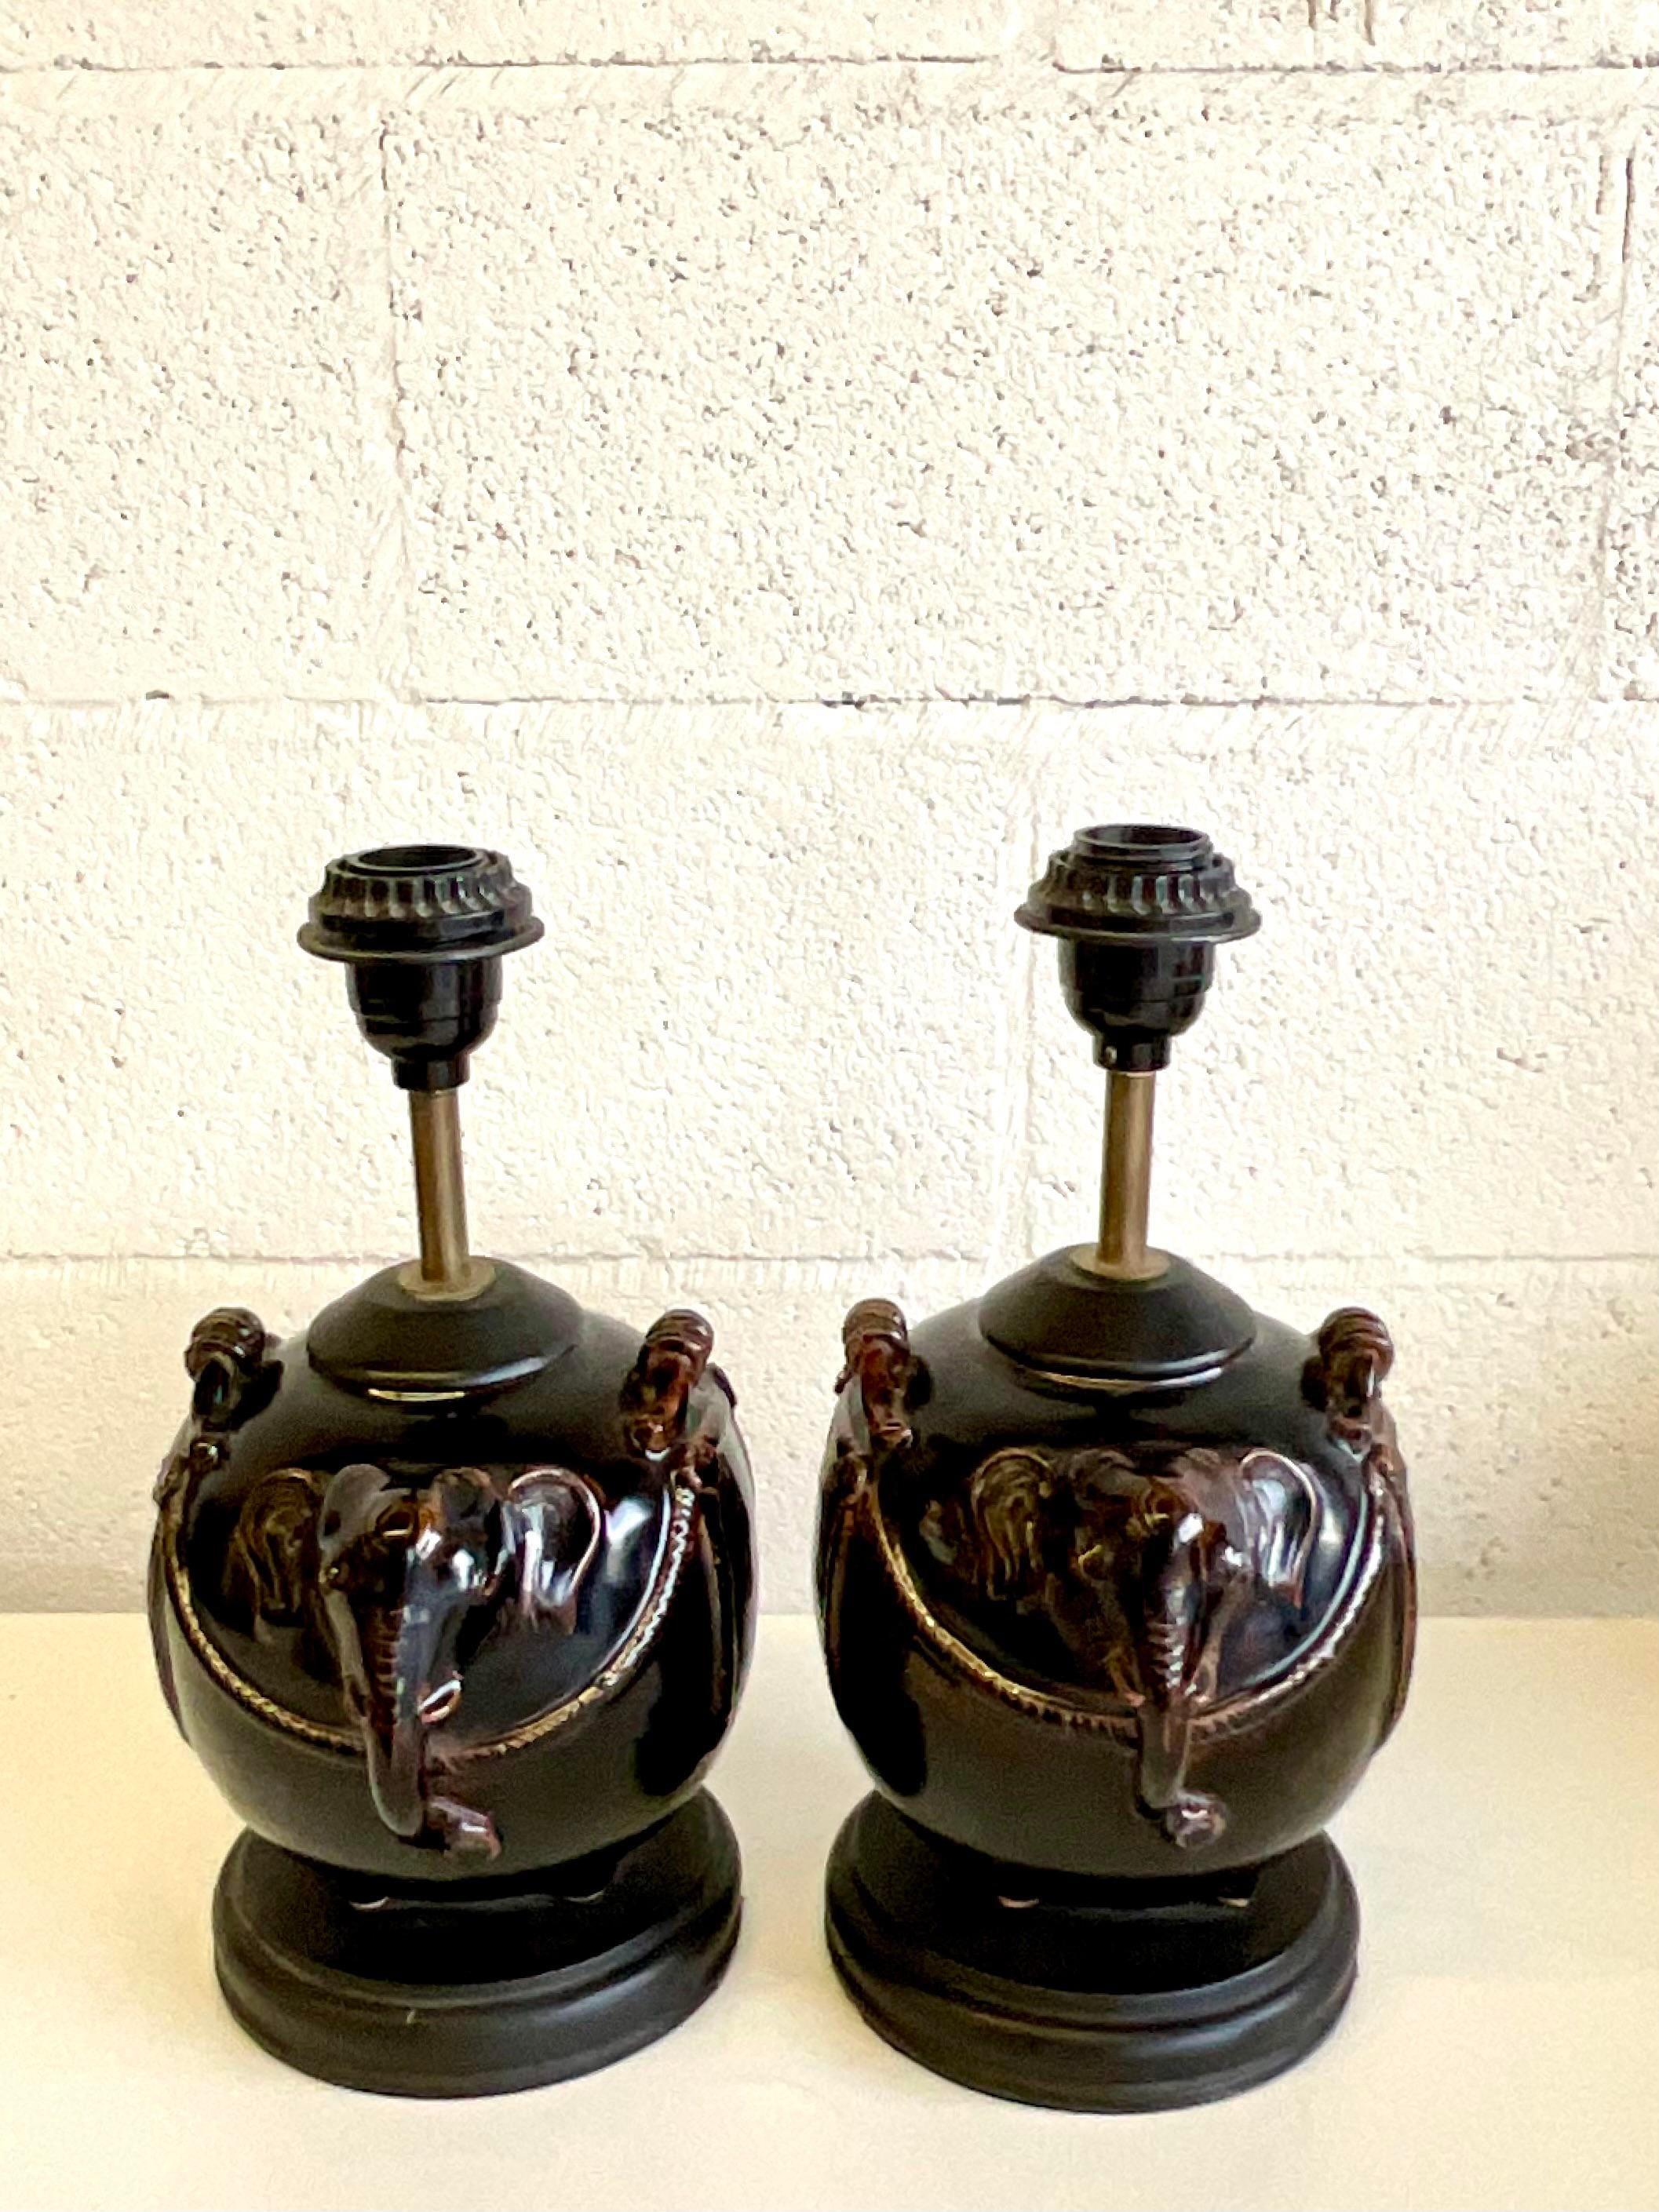 Fantastique paire de lampes vintage en céramique émaillée. Un charmant motif d'éléphant dans un brun riche et profond. Acquis d'une propriété de Palm Beach.